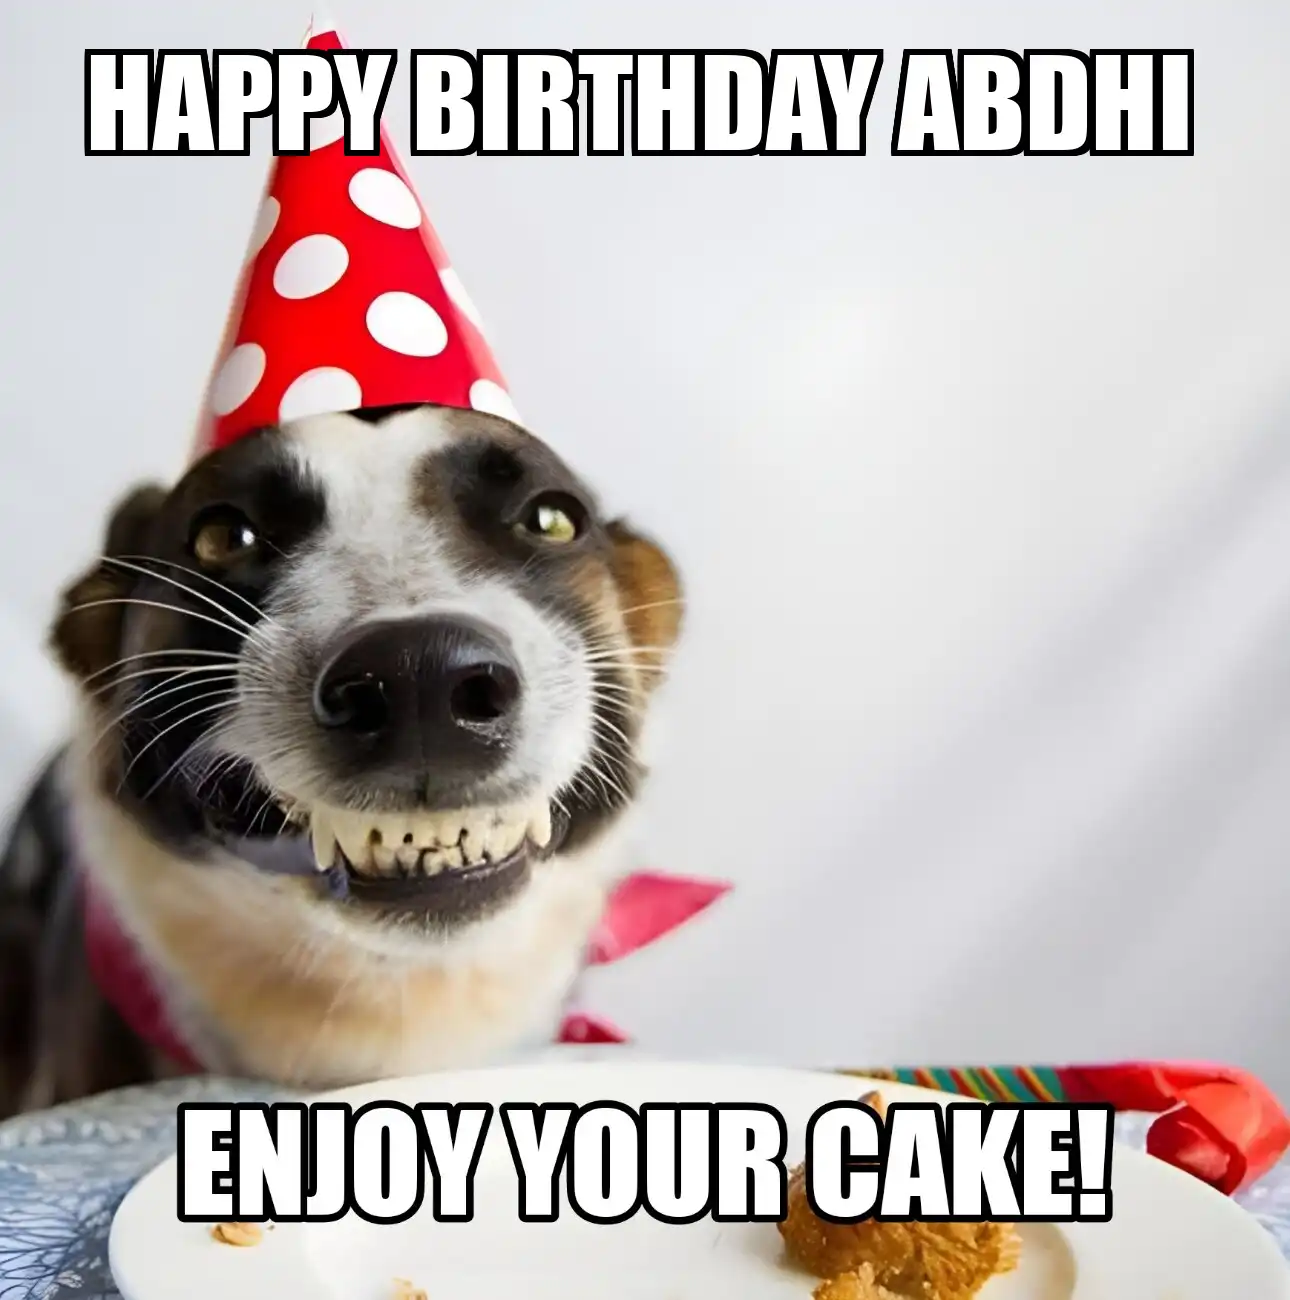 Happy Birthday Abdhi Enjoy Your Cake Dog Meme